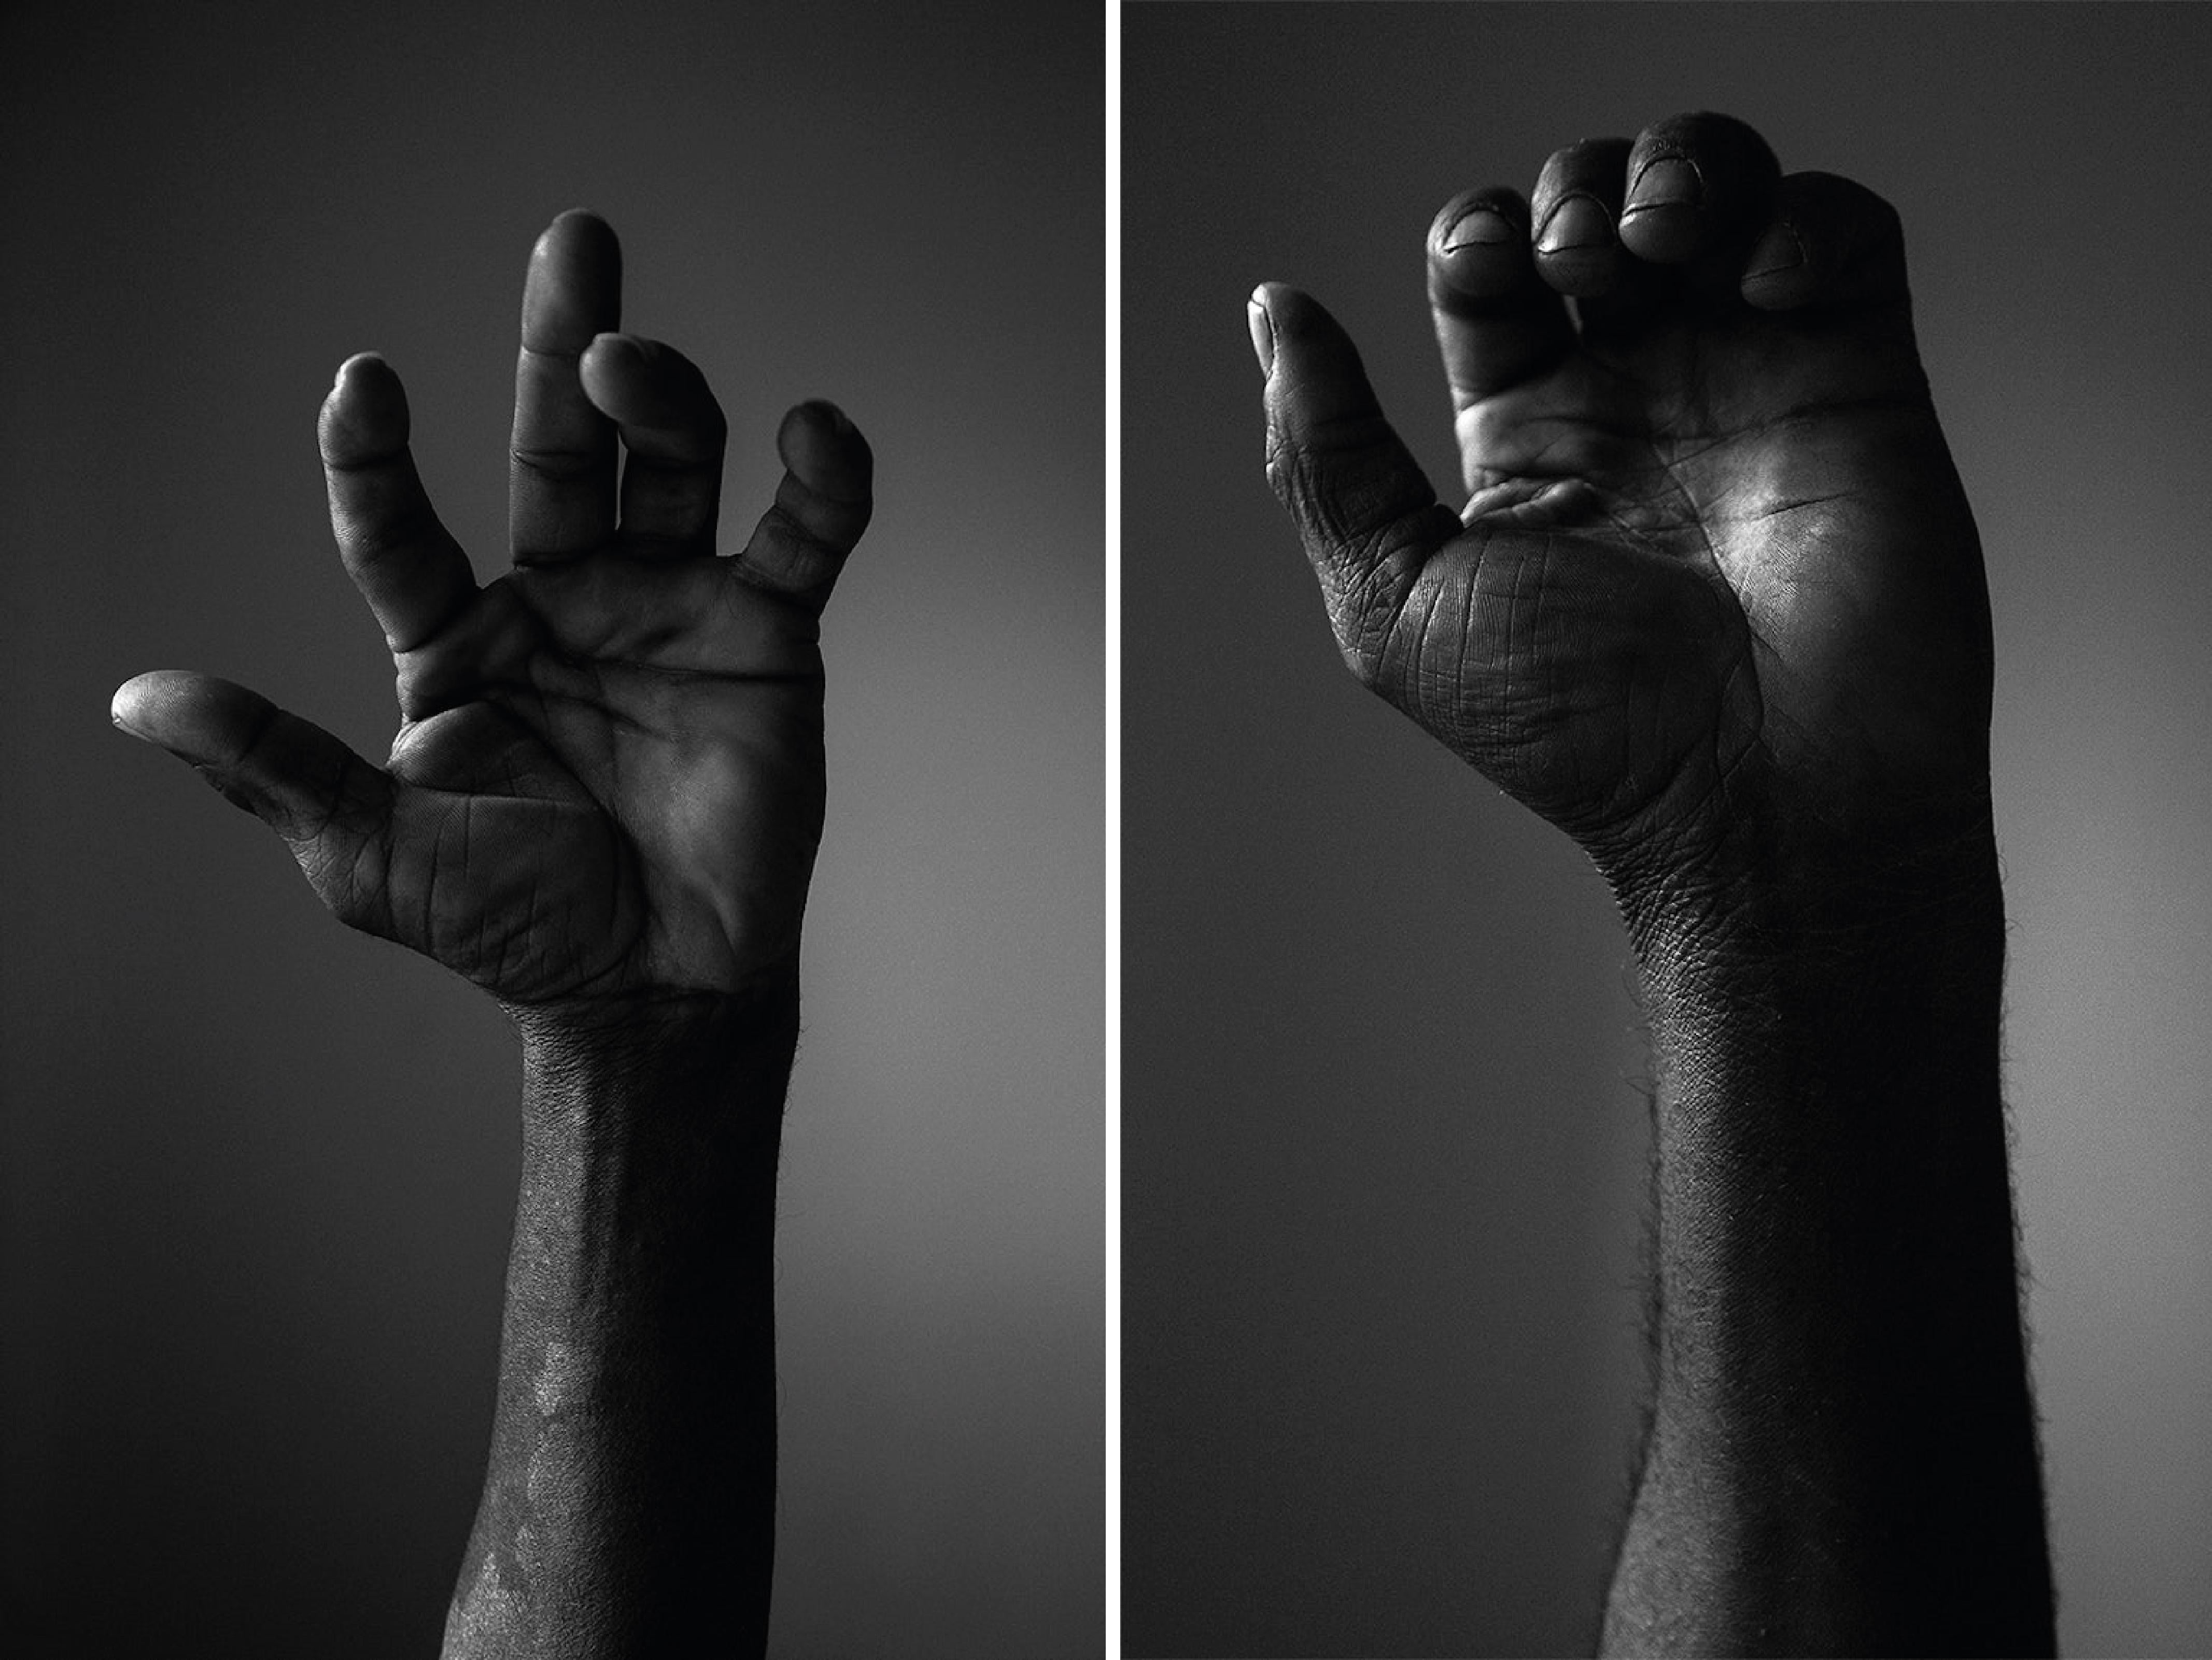 Black and White Photograph Guilherme Licurgo - Manifesto VII, et VI Extrait de la série "Manifeste". 